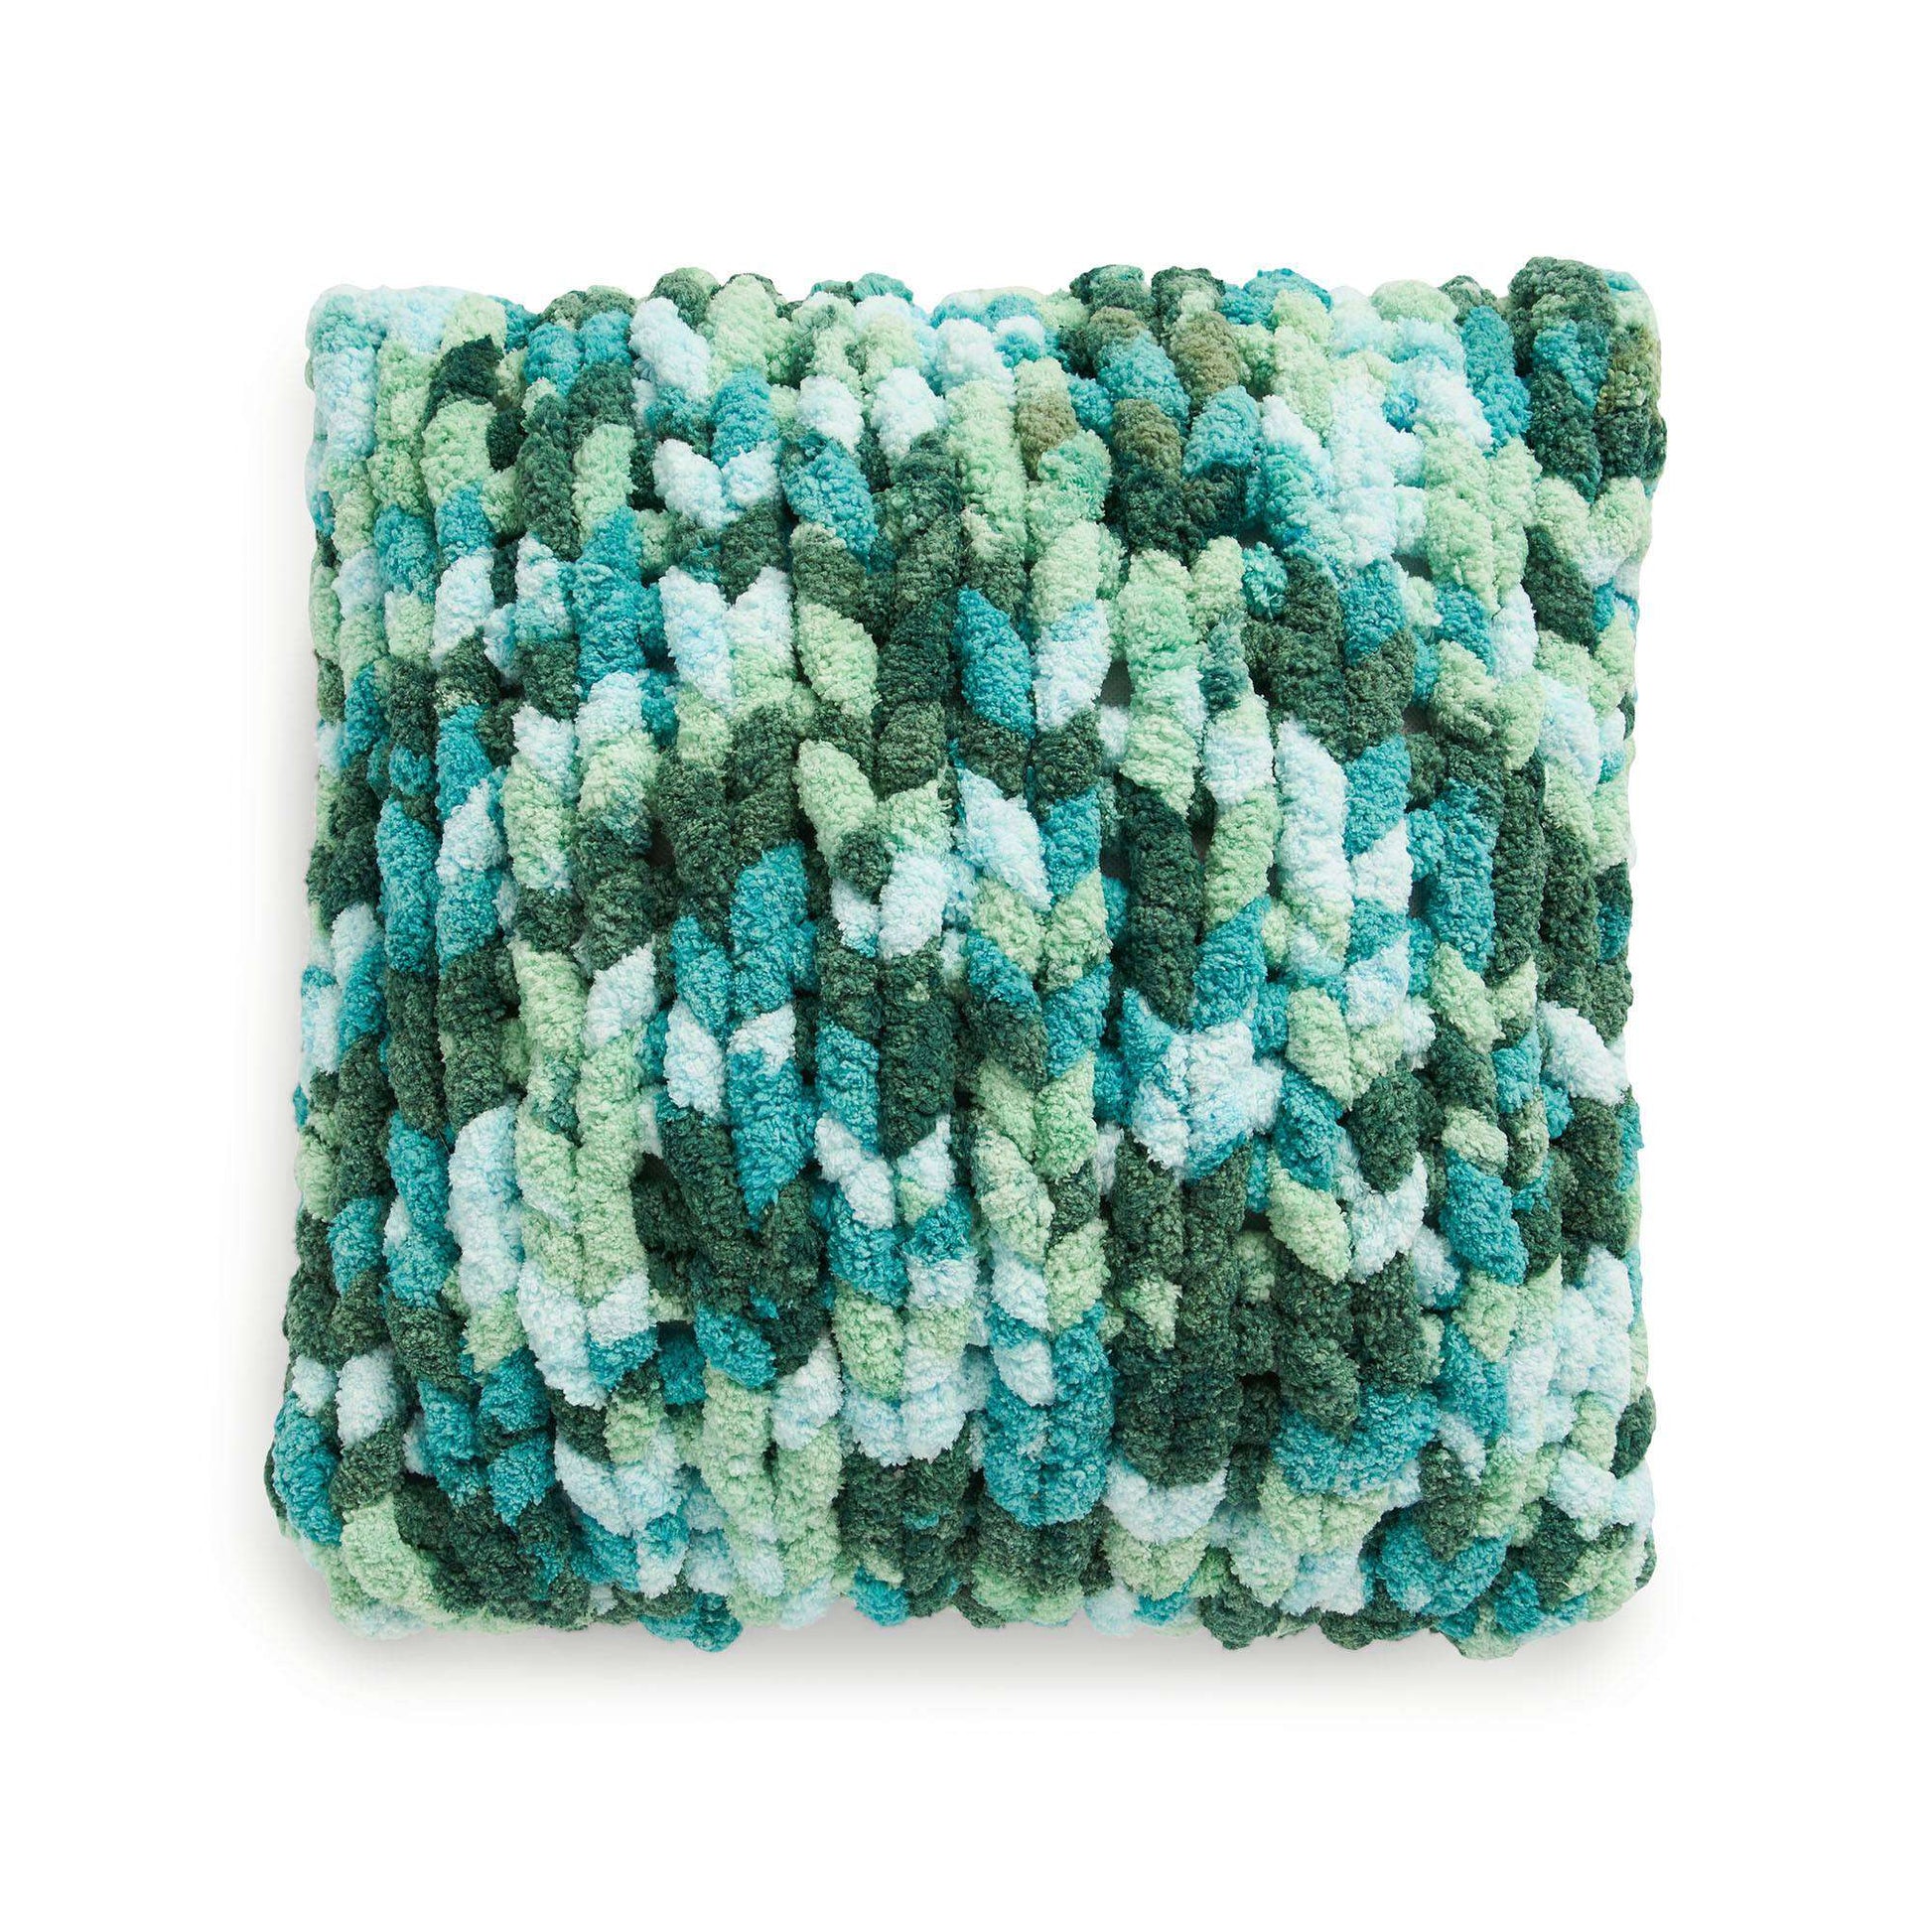 Free Bernat Super Stocking Stitch Knit Pillow Pattern